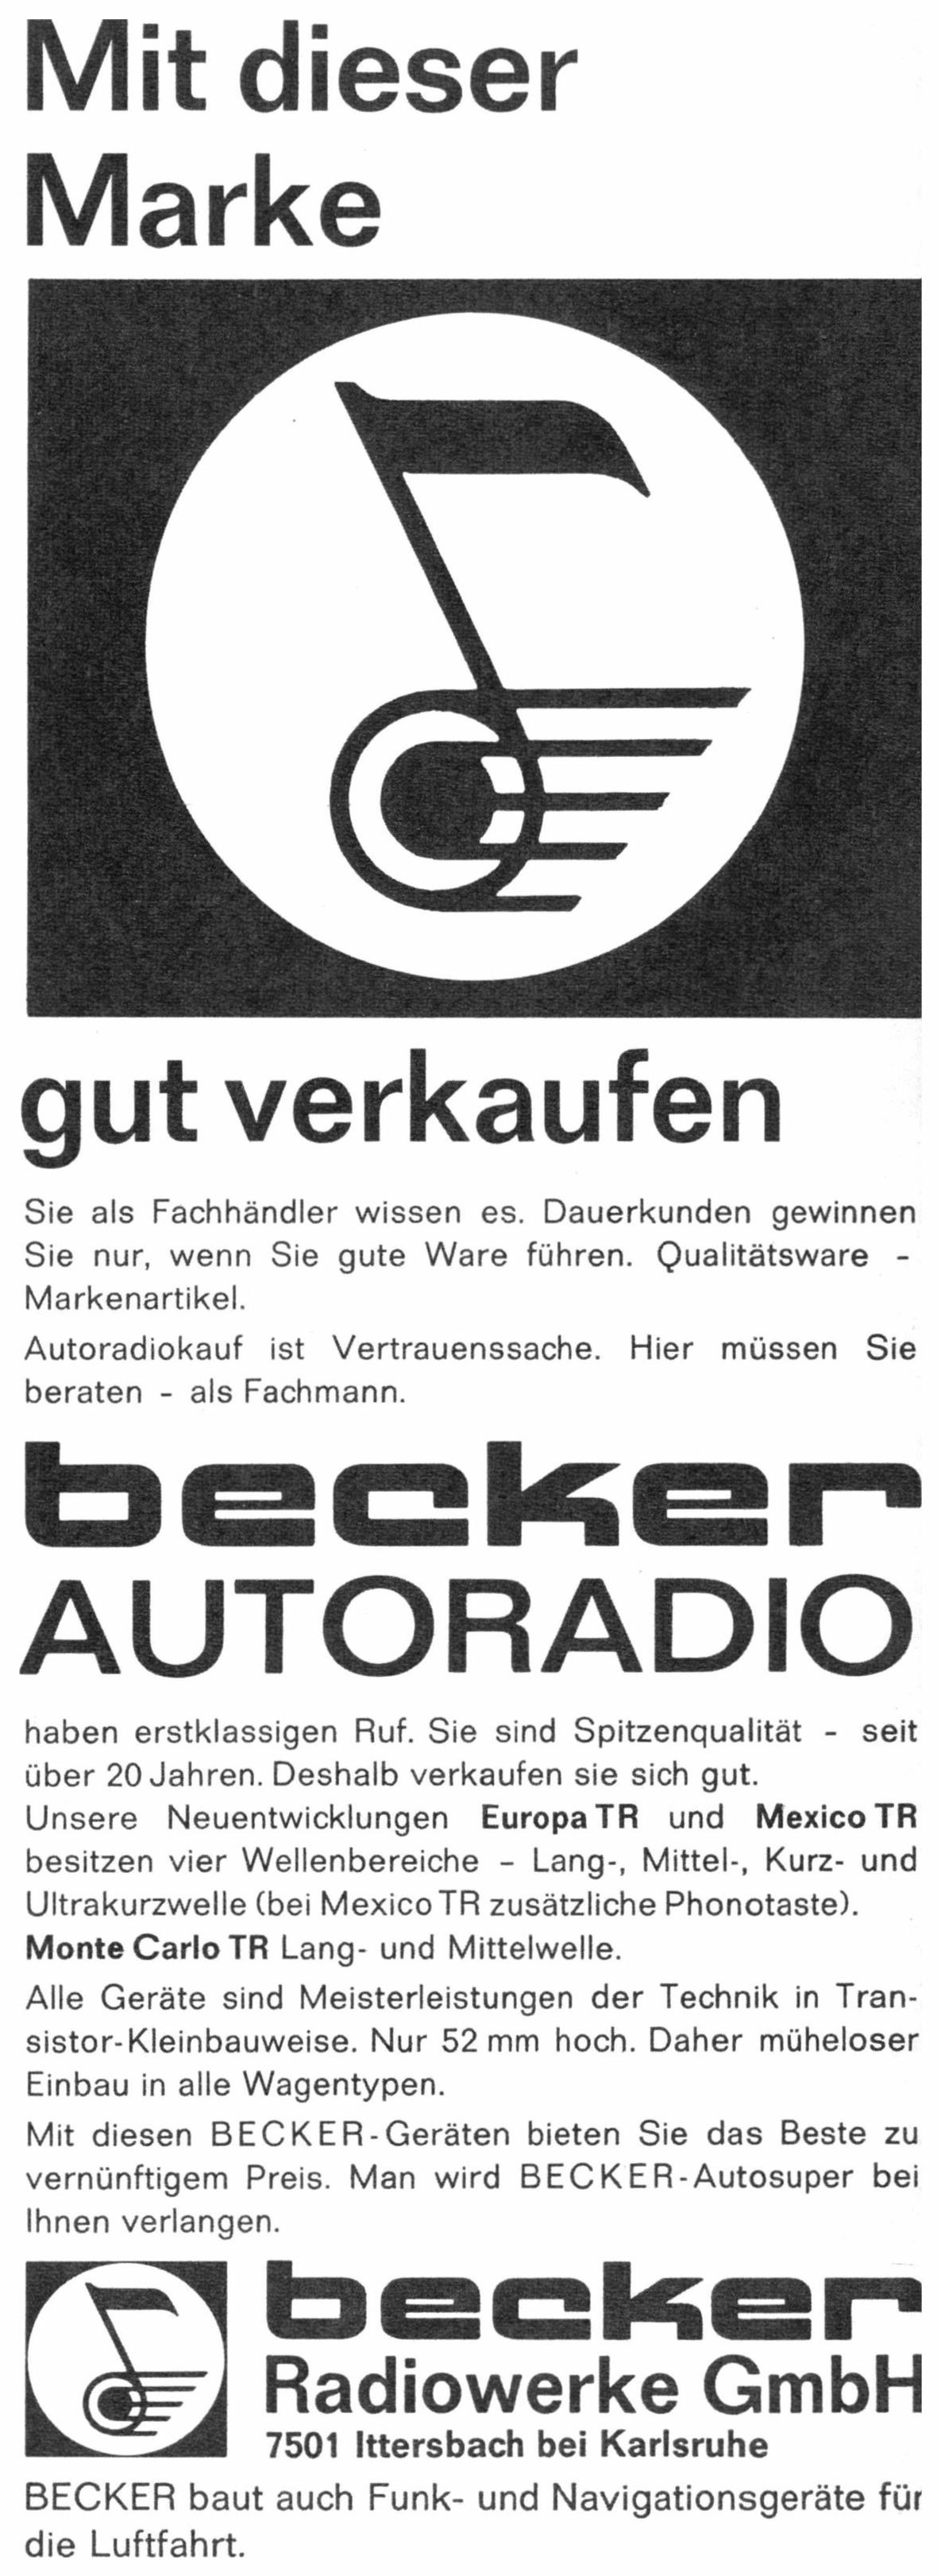 Becker 1965 0.jpg